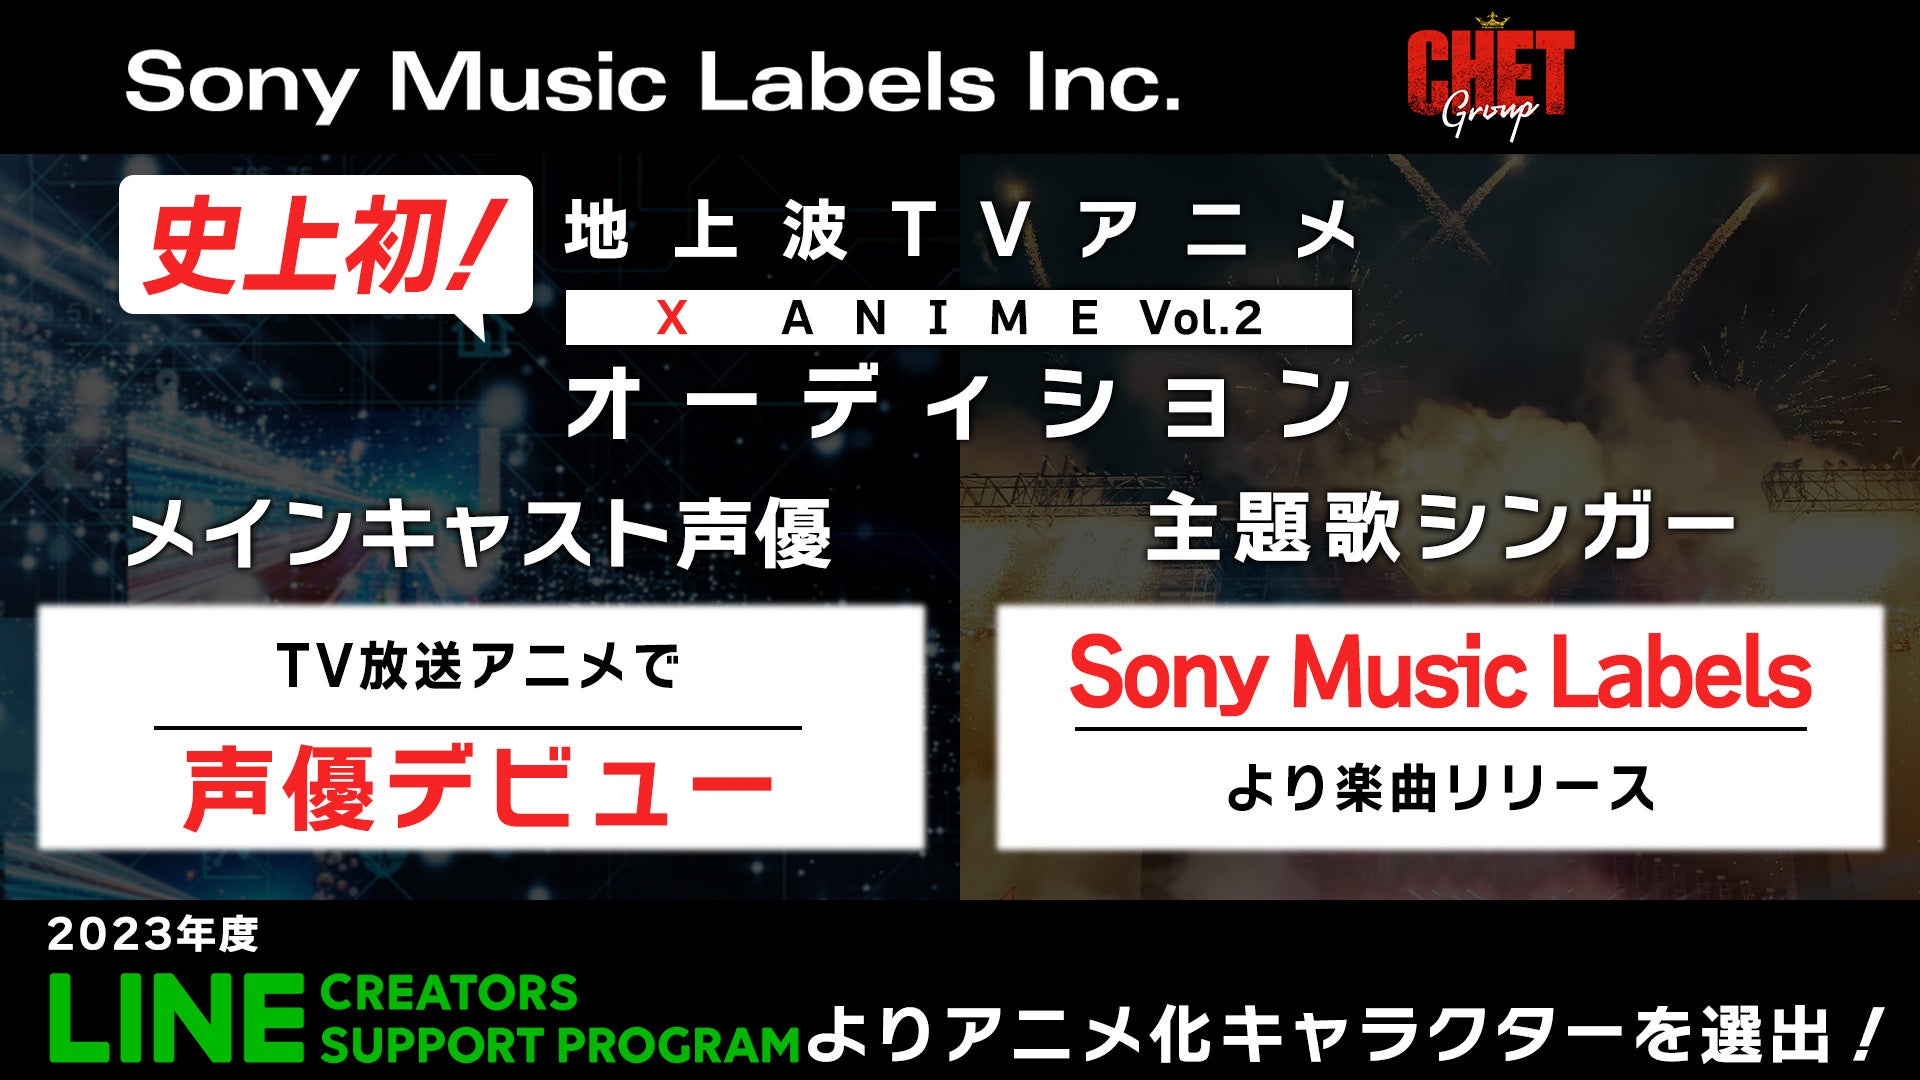 ソニー・ミュージックレーベルズ・CHET Group・CBCテレビ共同プロジェクトX Anime第2弾は、LINEスタンプクリエイター作品のTVアニメ化！本作品のメイン声優&主題歌シンガーを同時募集！のサブ画像1